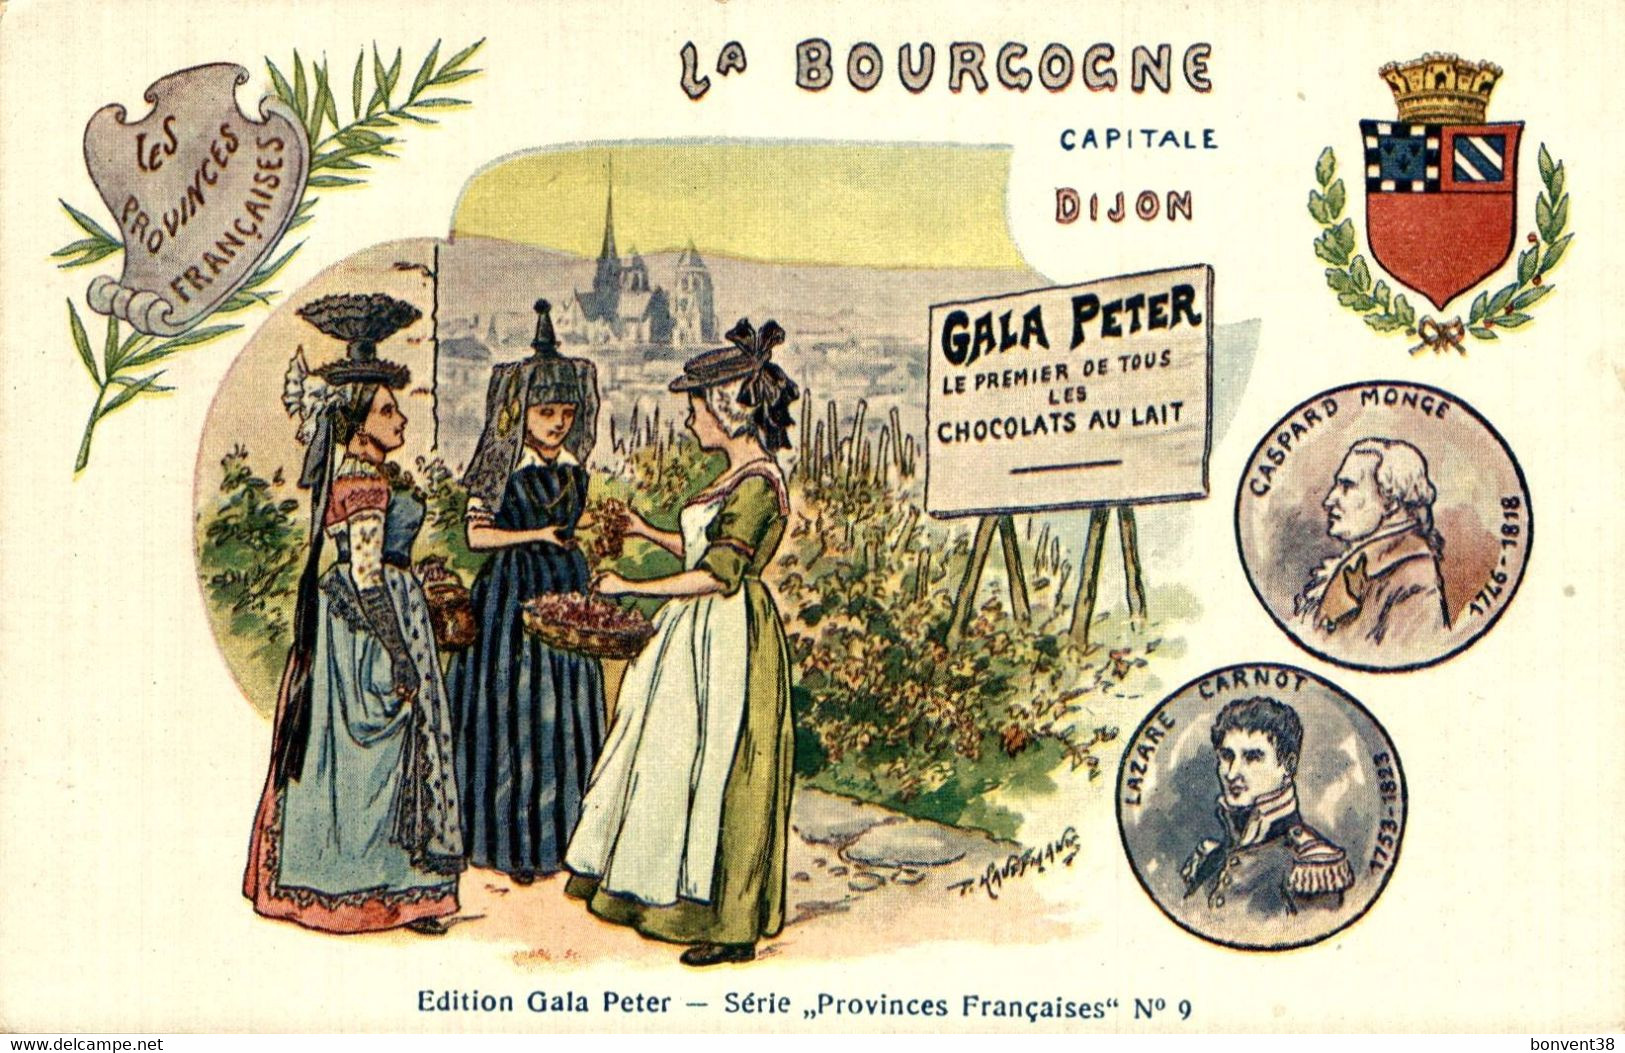 I0609 - La BOURGOGNE - DIJON - GALA PETER - Le Premier De Tous Les CHOCOLATS AU LAIT - Advertising